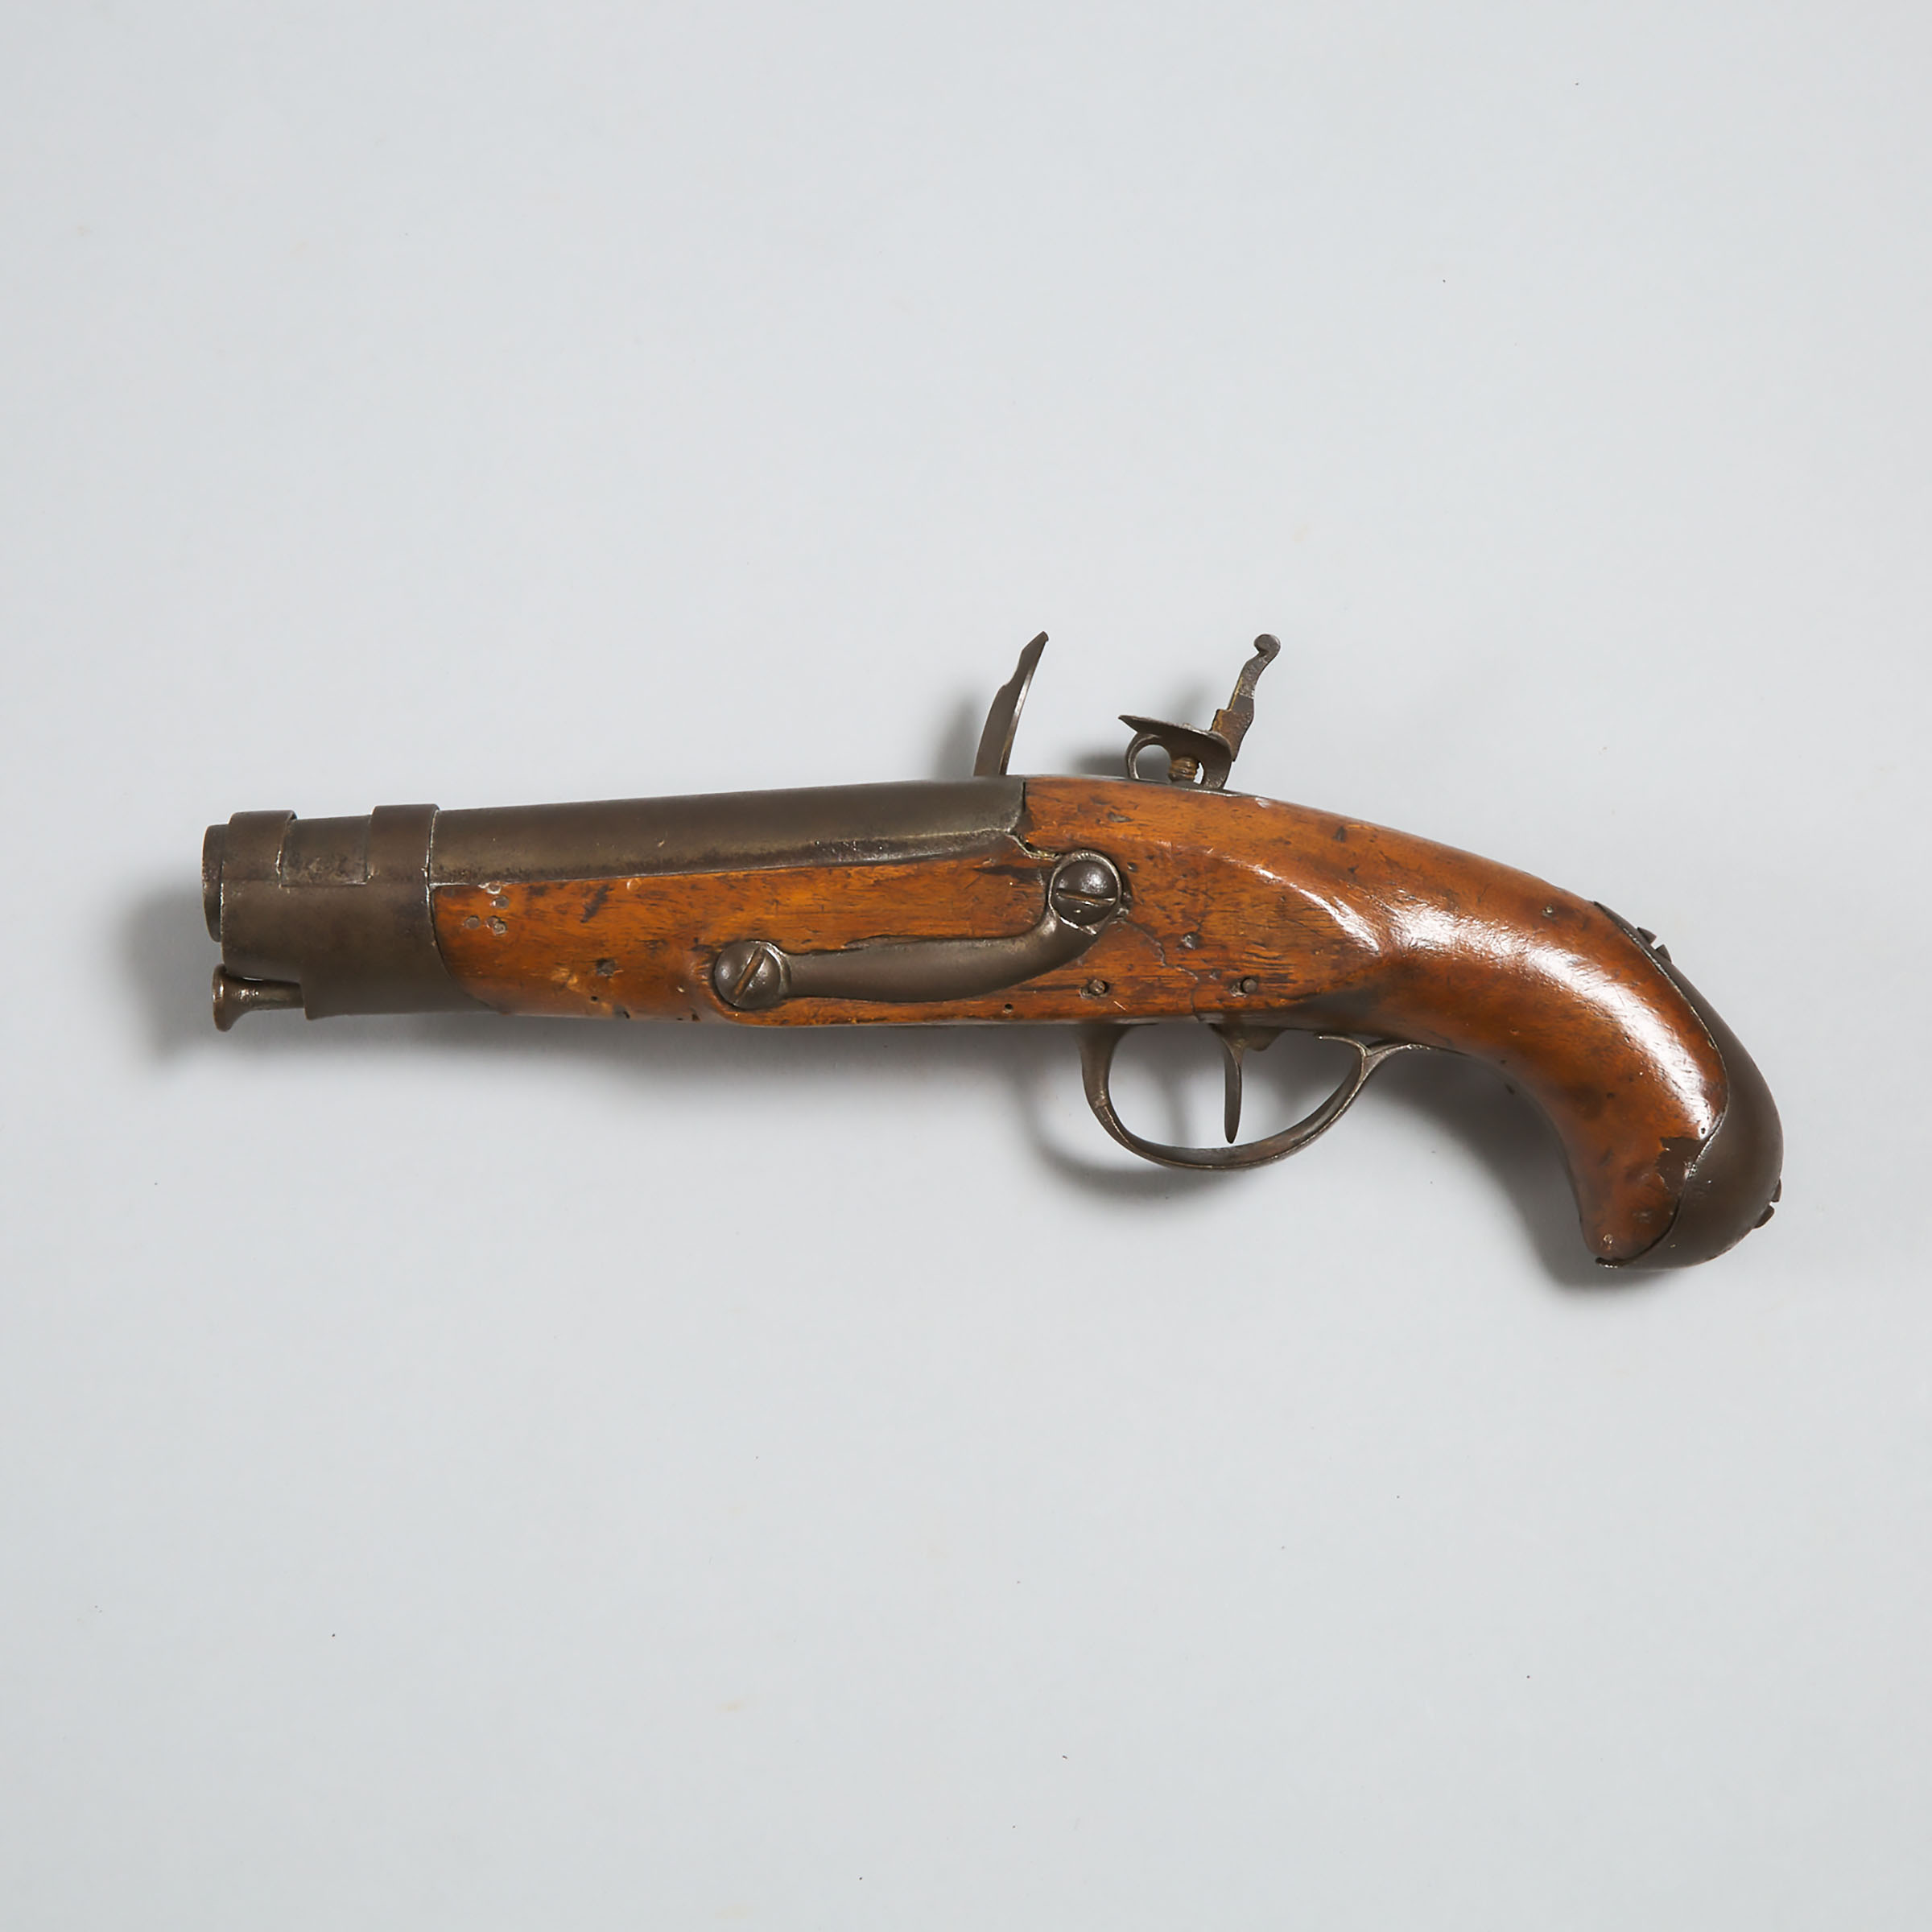 Belgian Flintlock Pistol, signed Gosuin, Liege, early 19th century